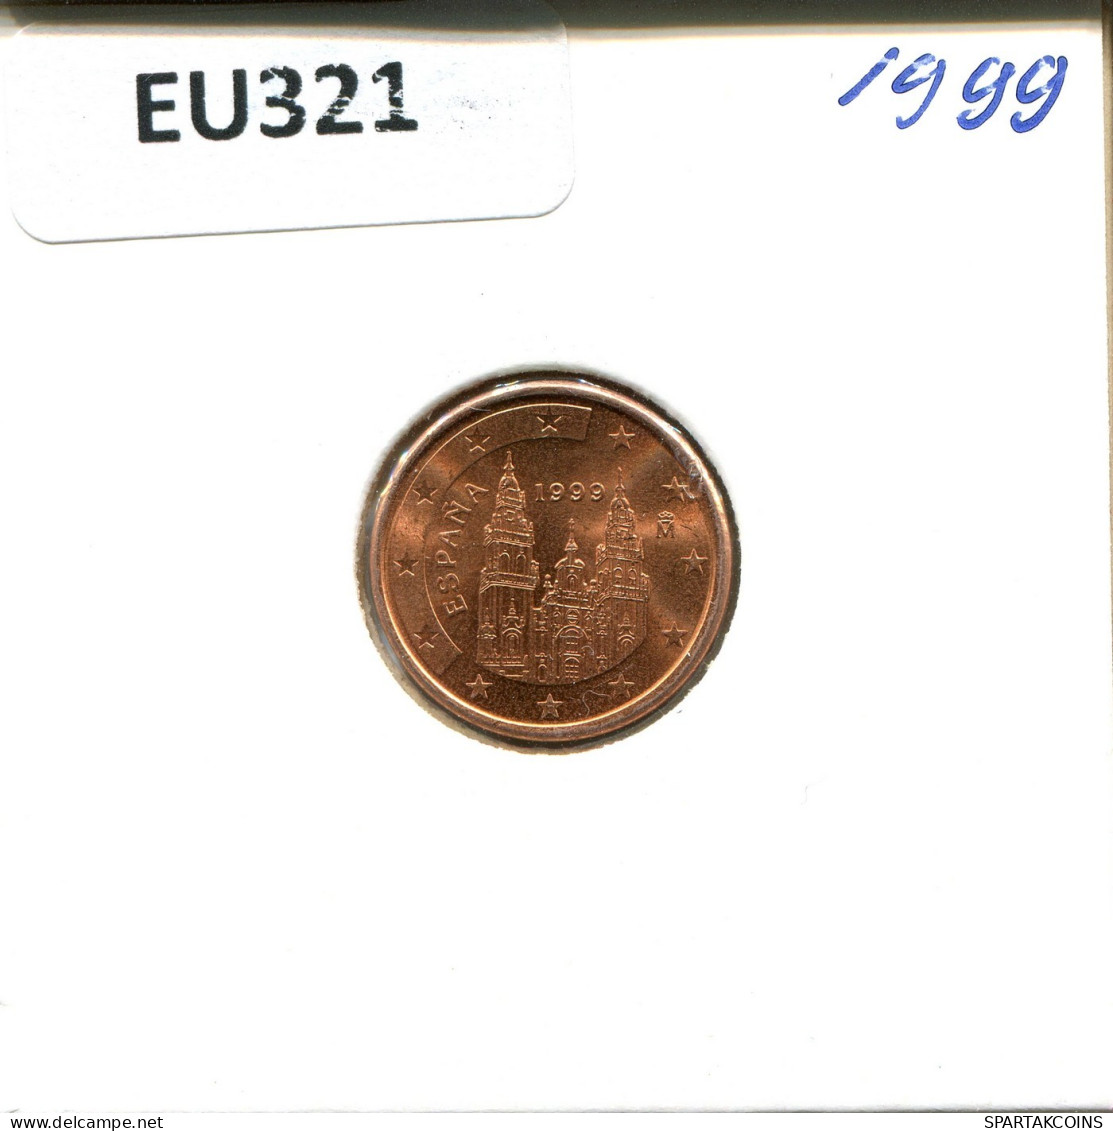 1 EURO CENT 1999 SPANIEN SPAIN Münze #EU321.D.A - Espagne